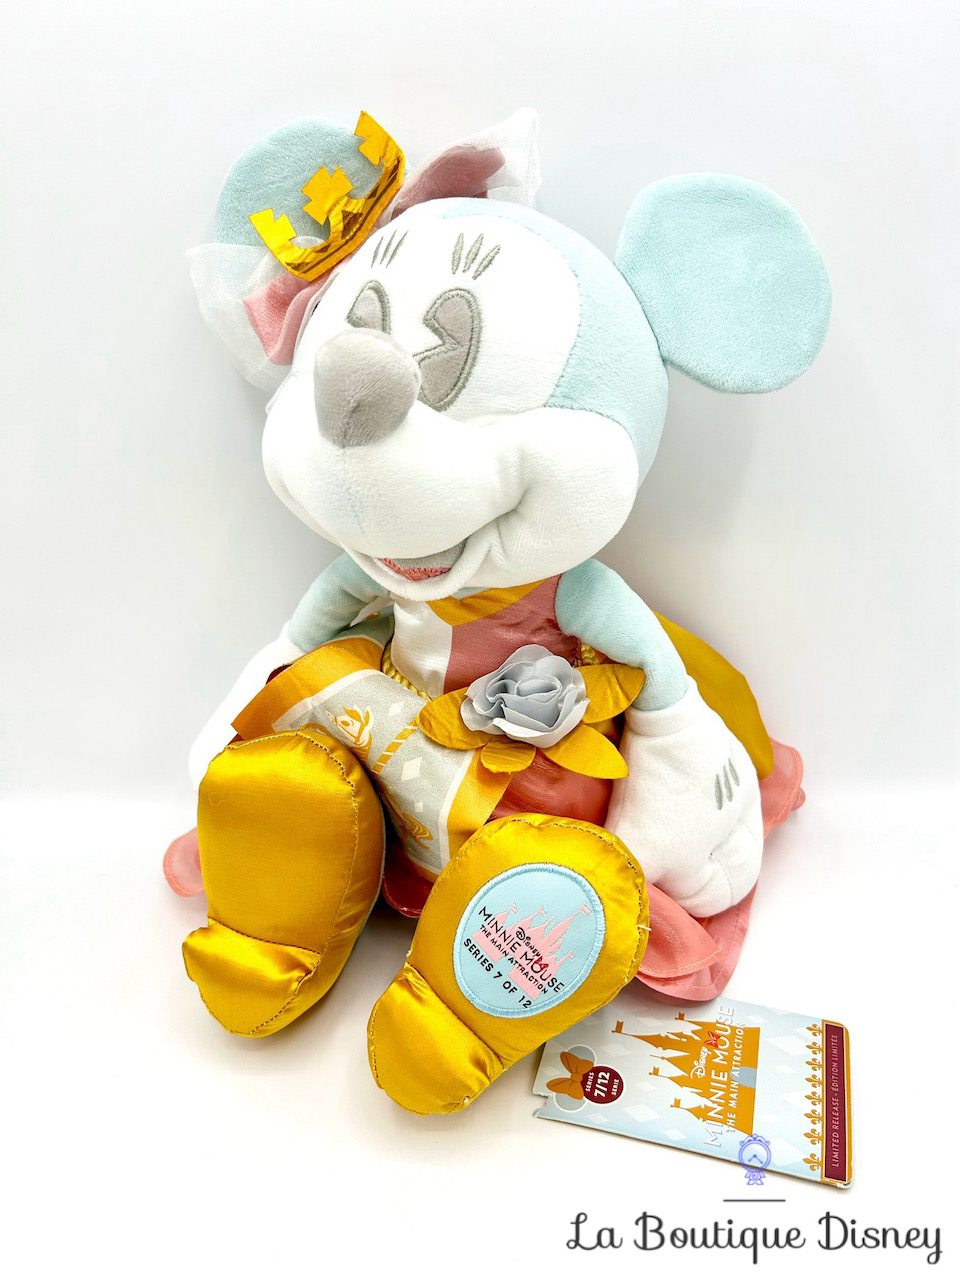 Peluche Minnie Mouse The Main Attraction 7 sur 12 Prince Charming Regal Carrousel Disney Store 2020 Édition limitée 43 cm